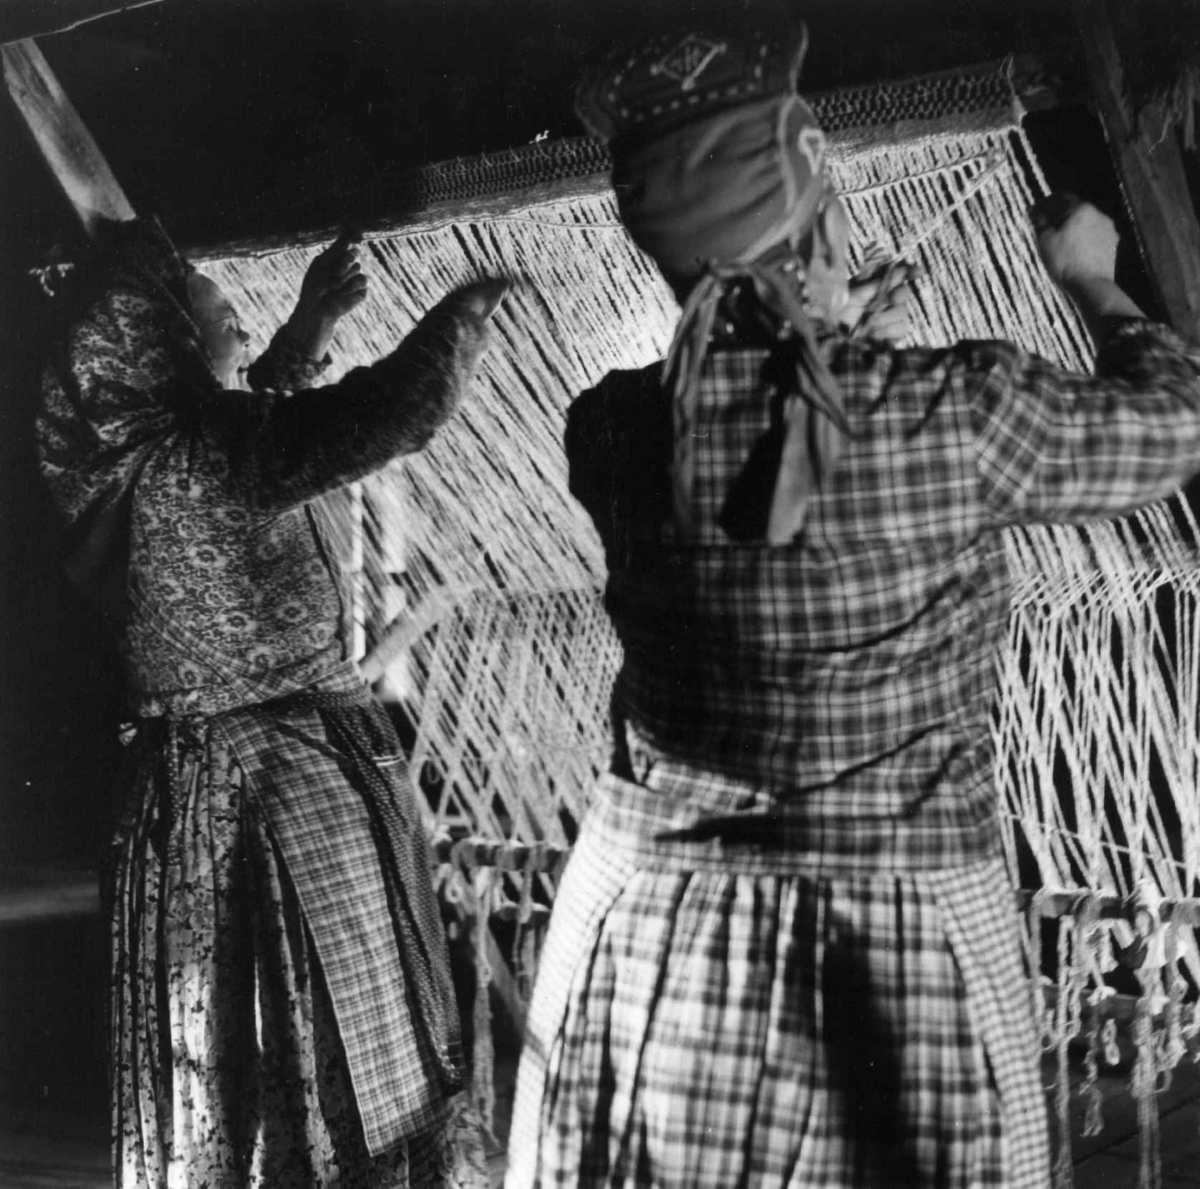 Greneveving. Skoltesamene Darja og Naska Moshnikov demonstrerer grenveveing på Föllisöen, Helsinki Universitet, Finland 1955. 21. De vever.